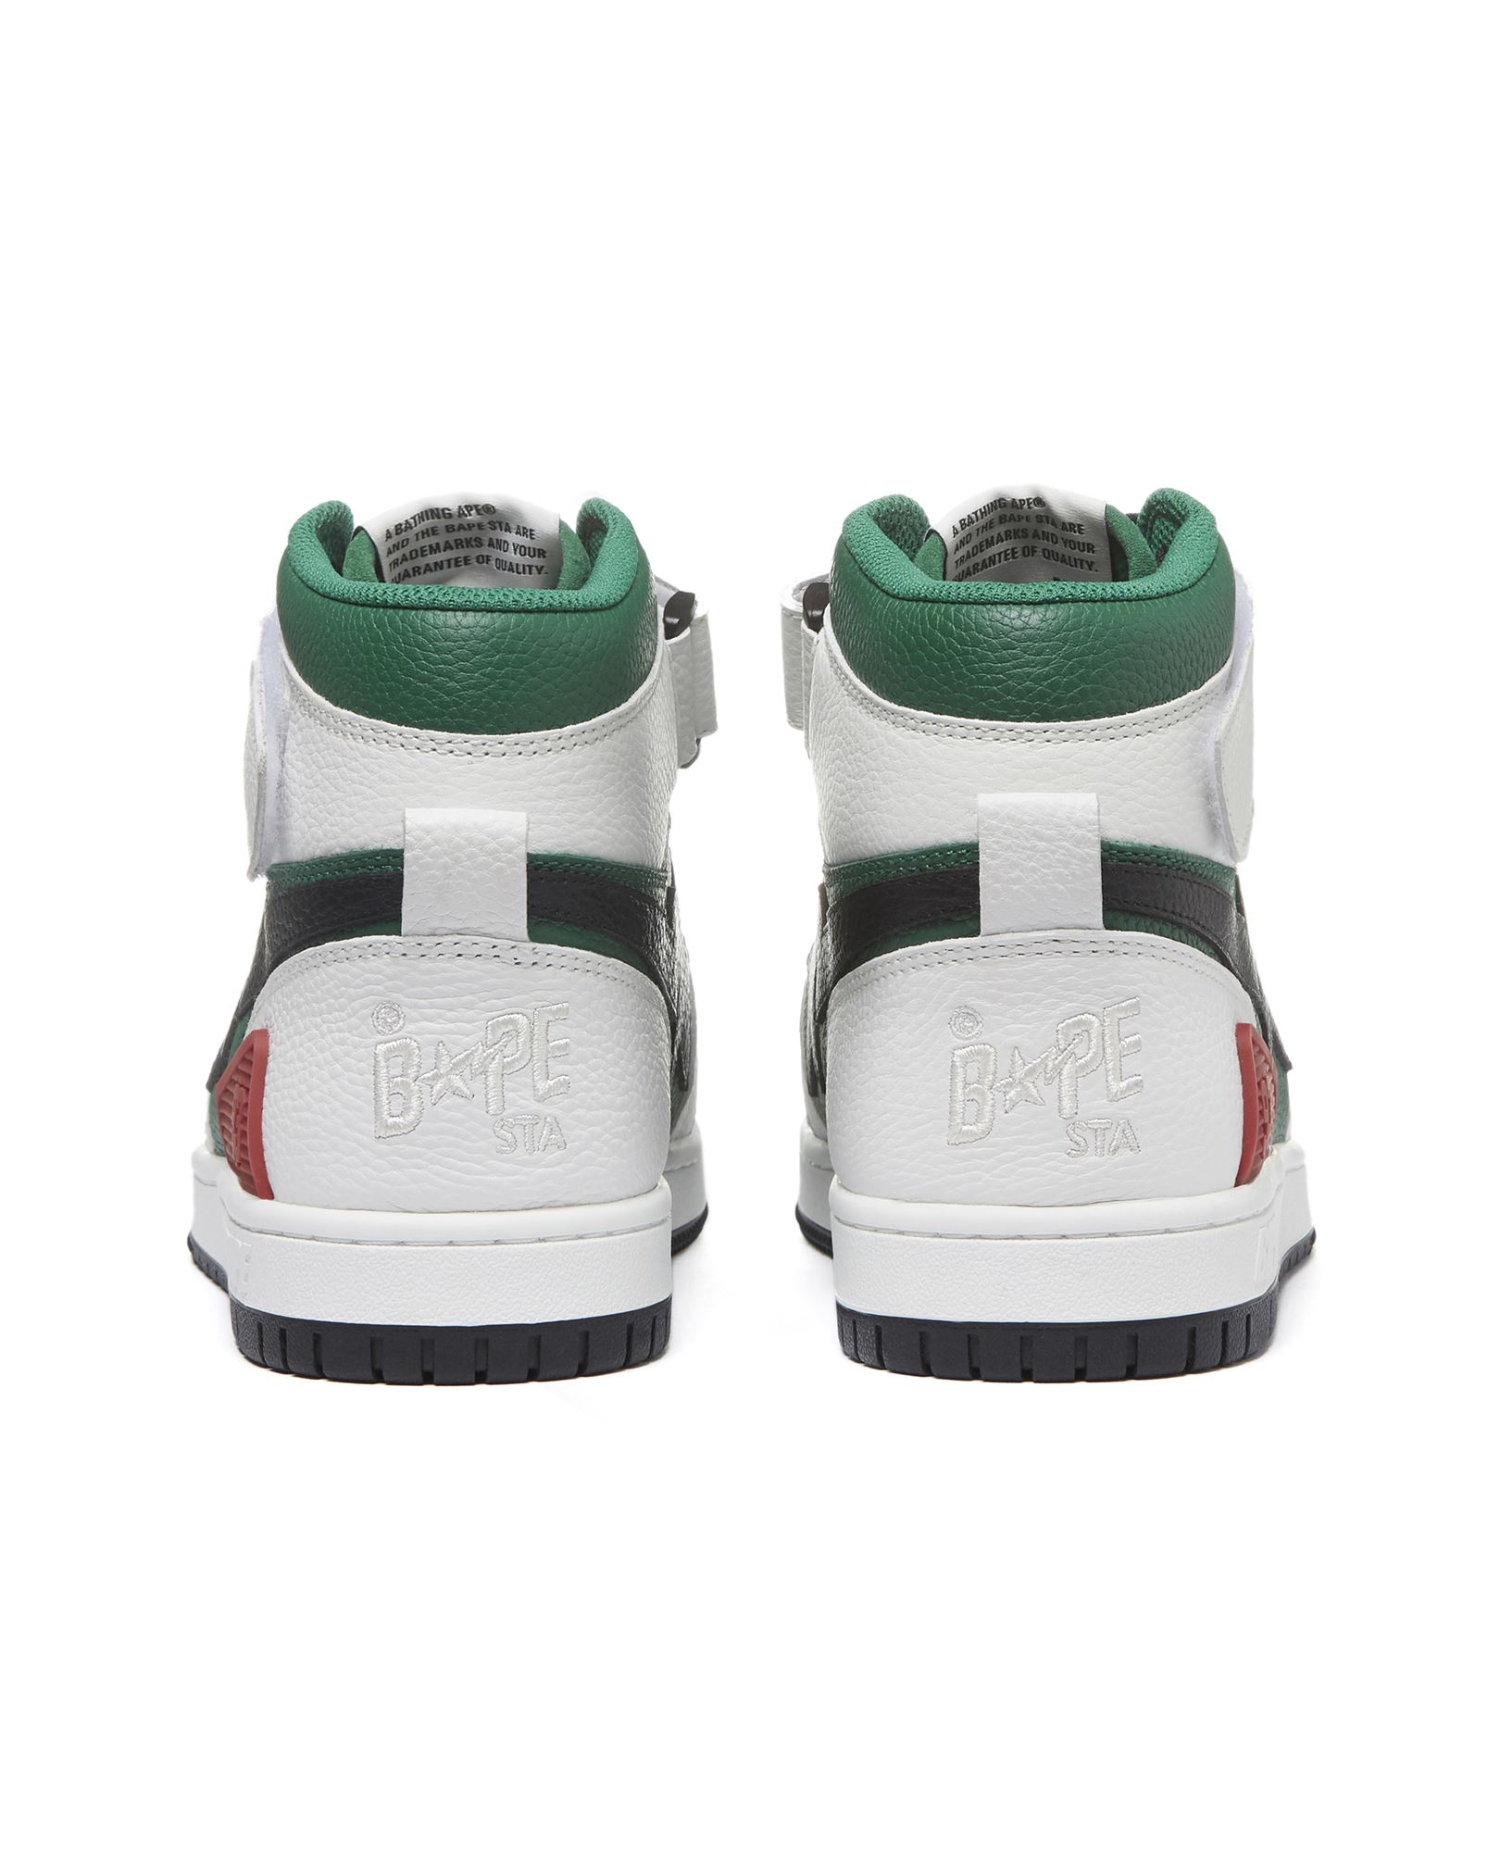 Bape® Block STA Hi #2 Sneakers